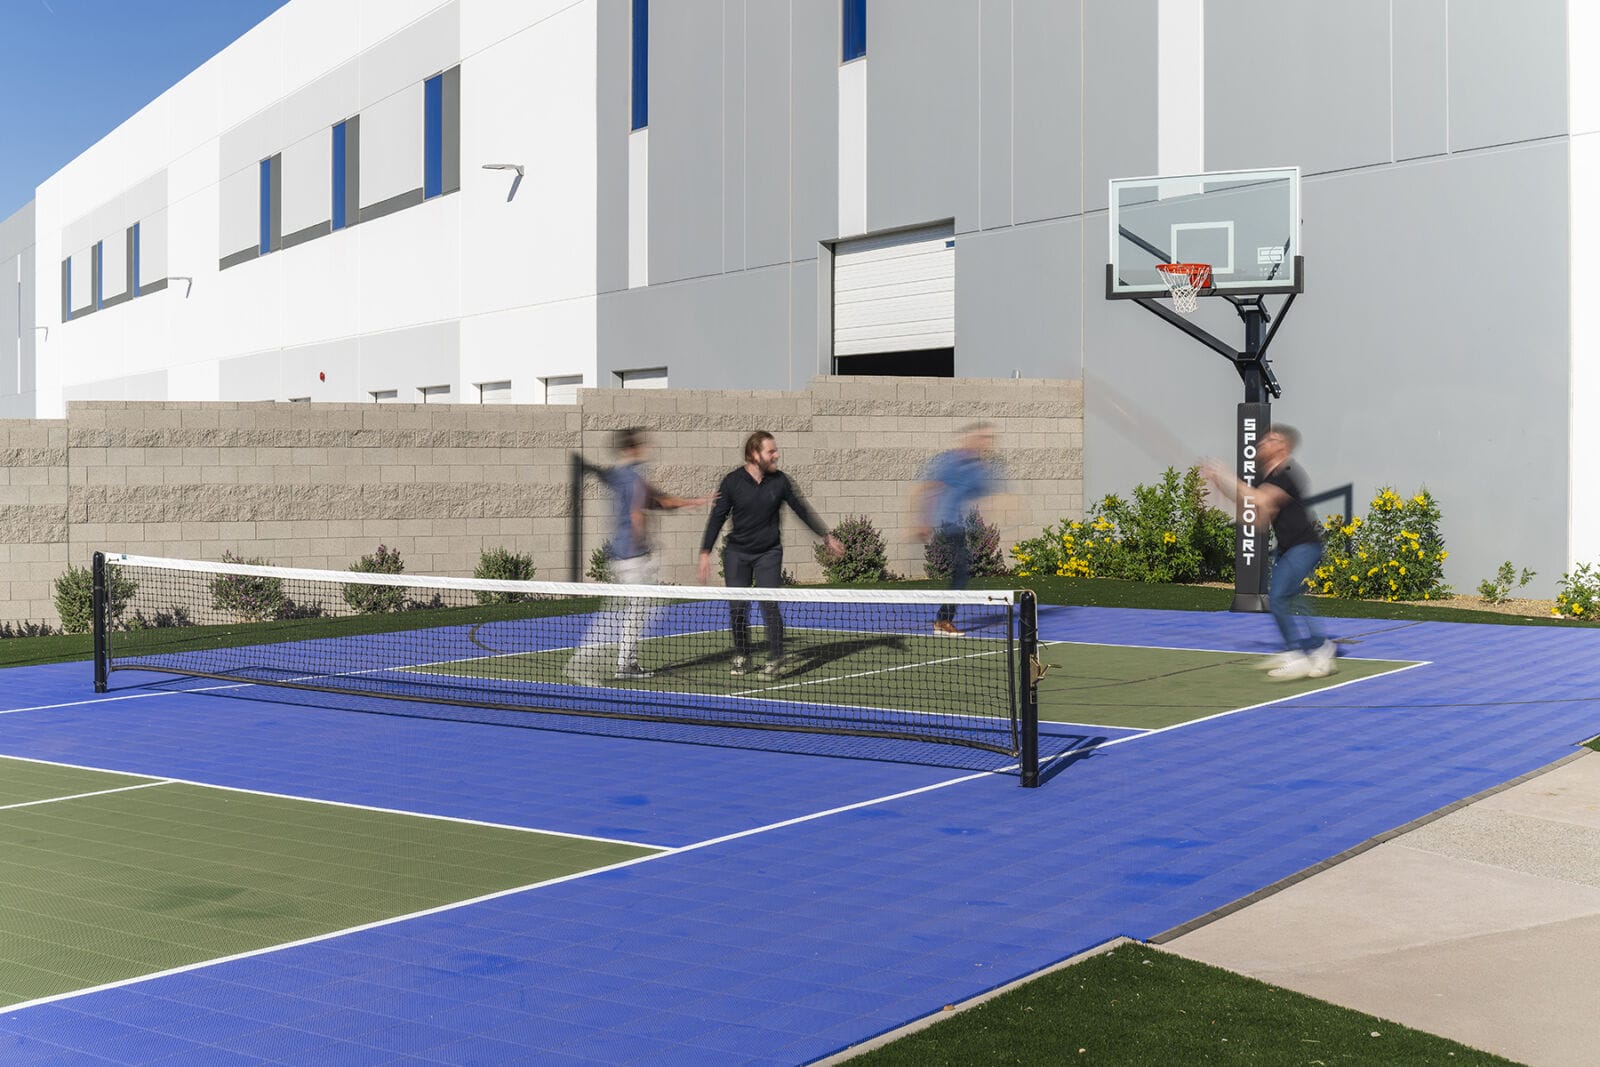 LPC_Park303 Building C_Basketball Court